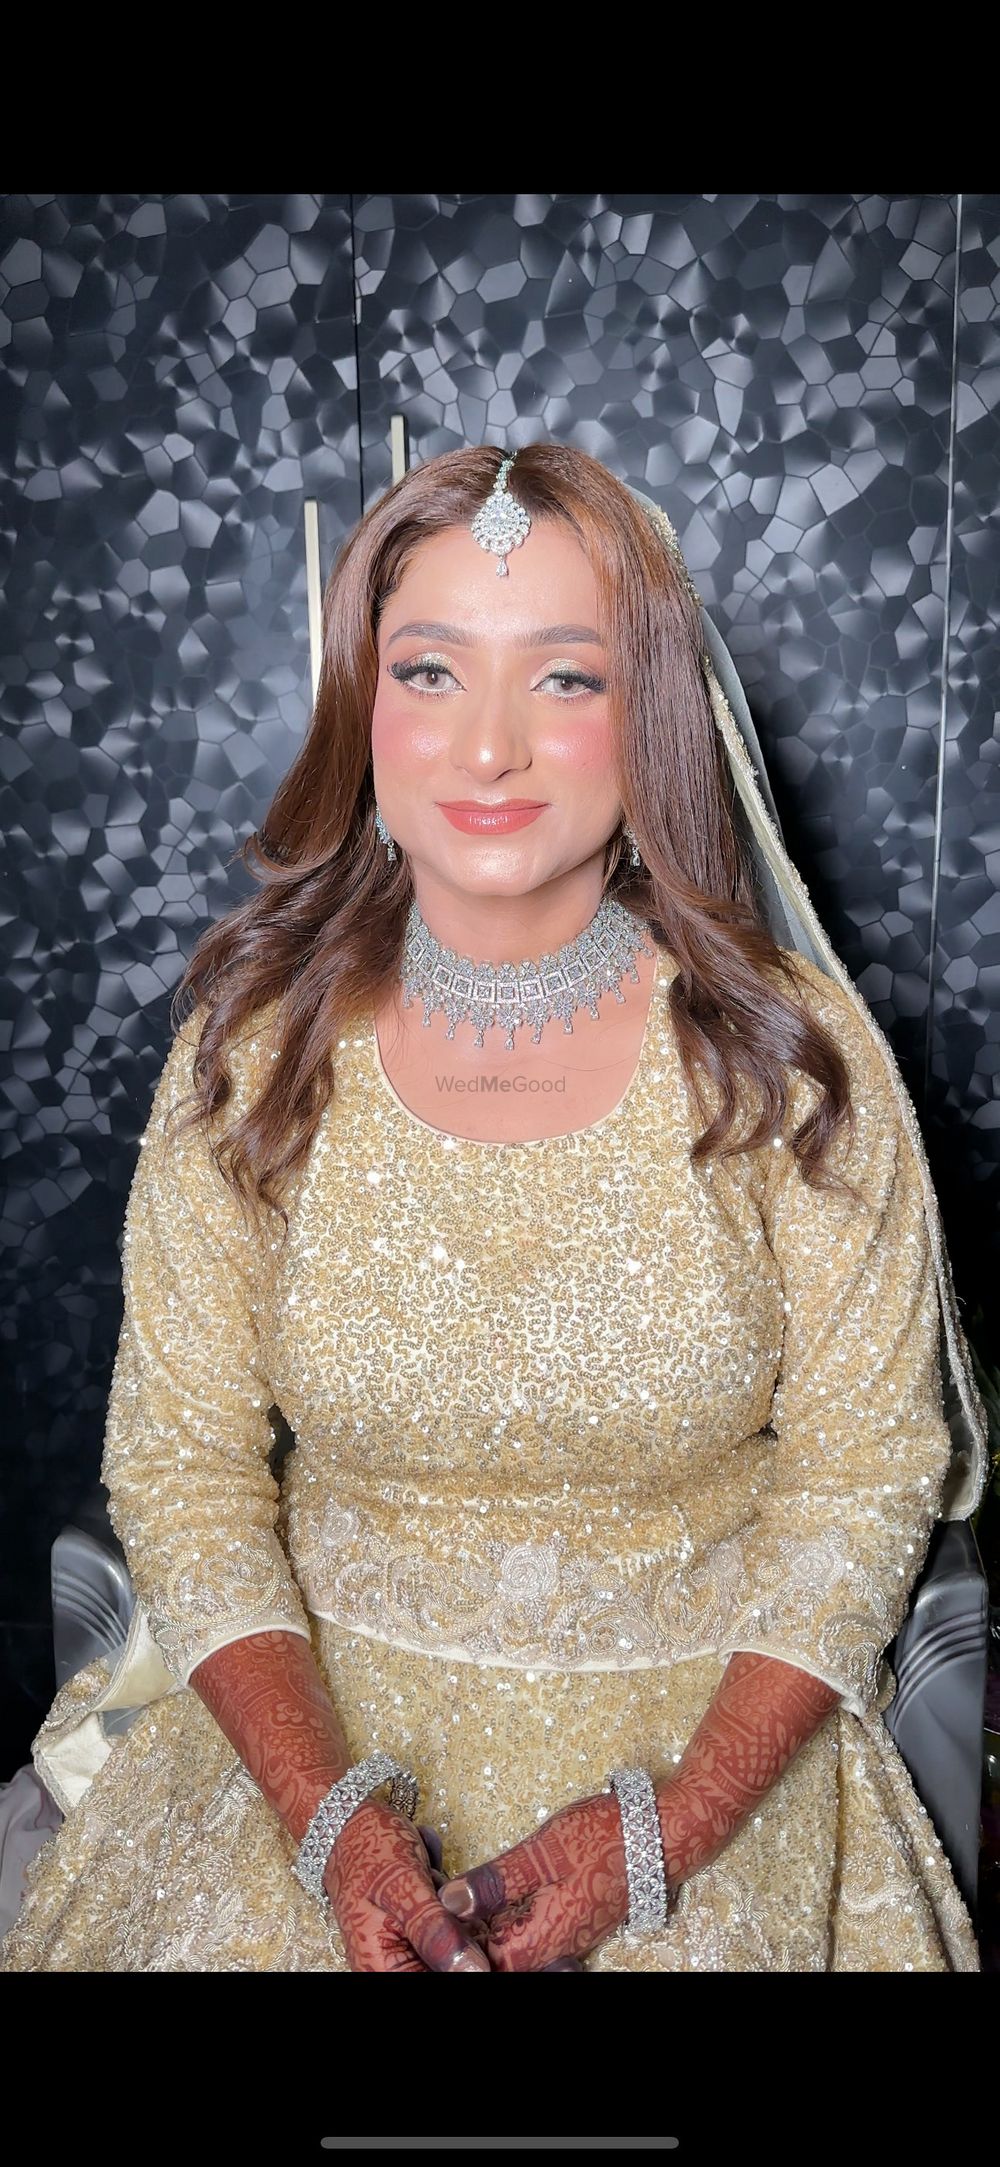 Photo By Zainab Makeovers - Bridal Makeup